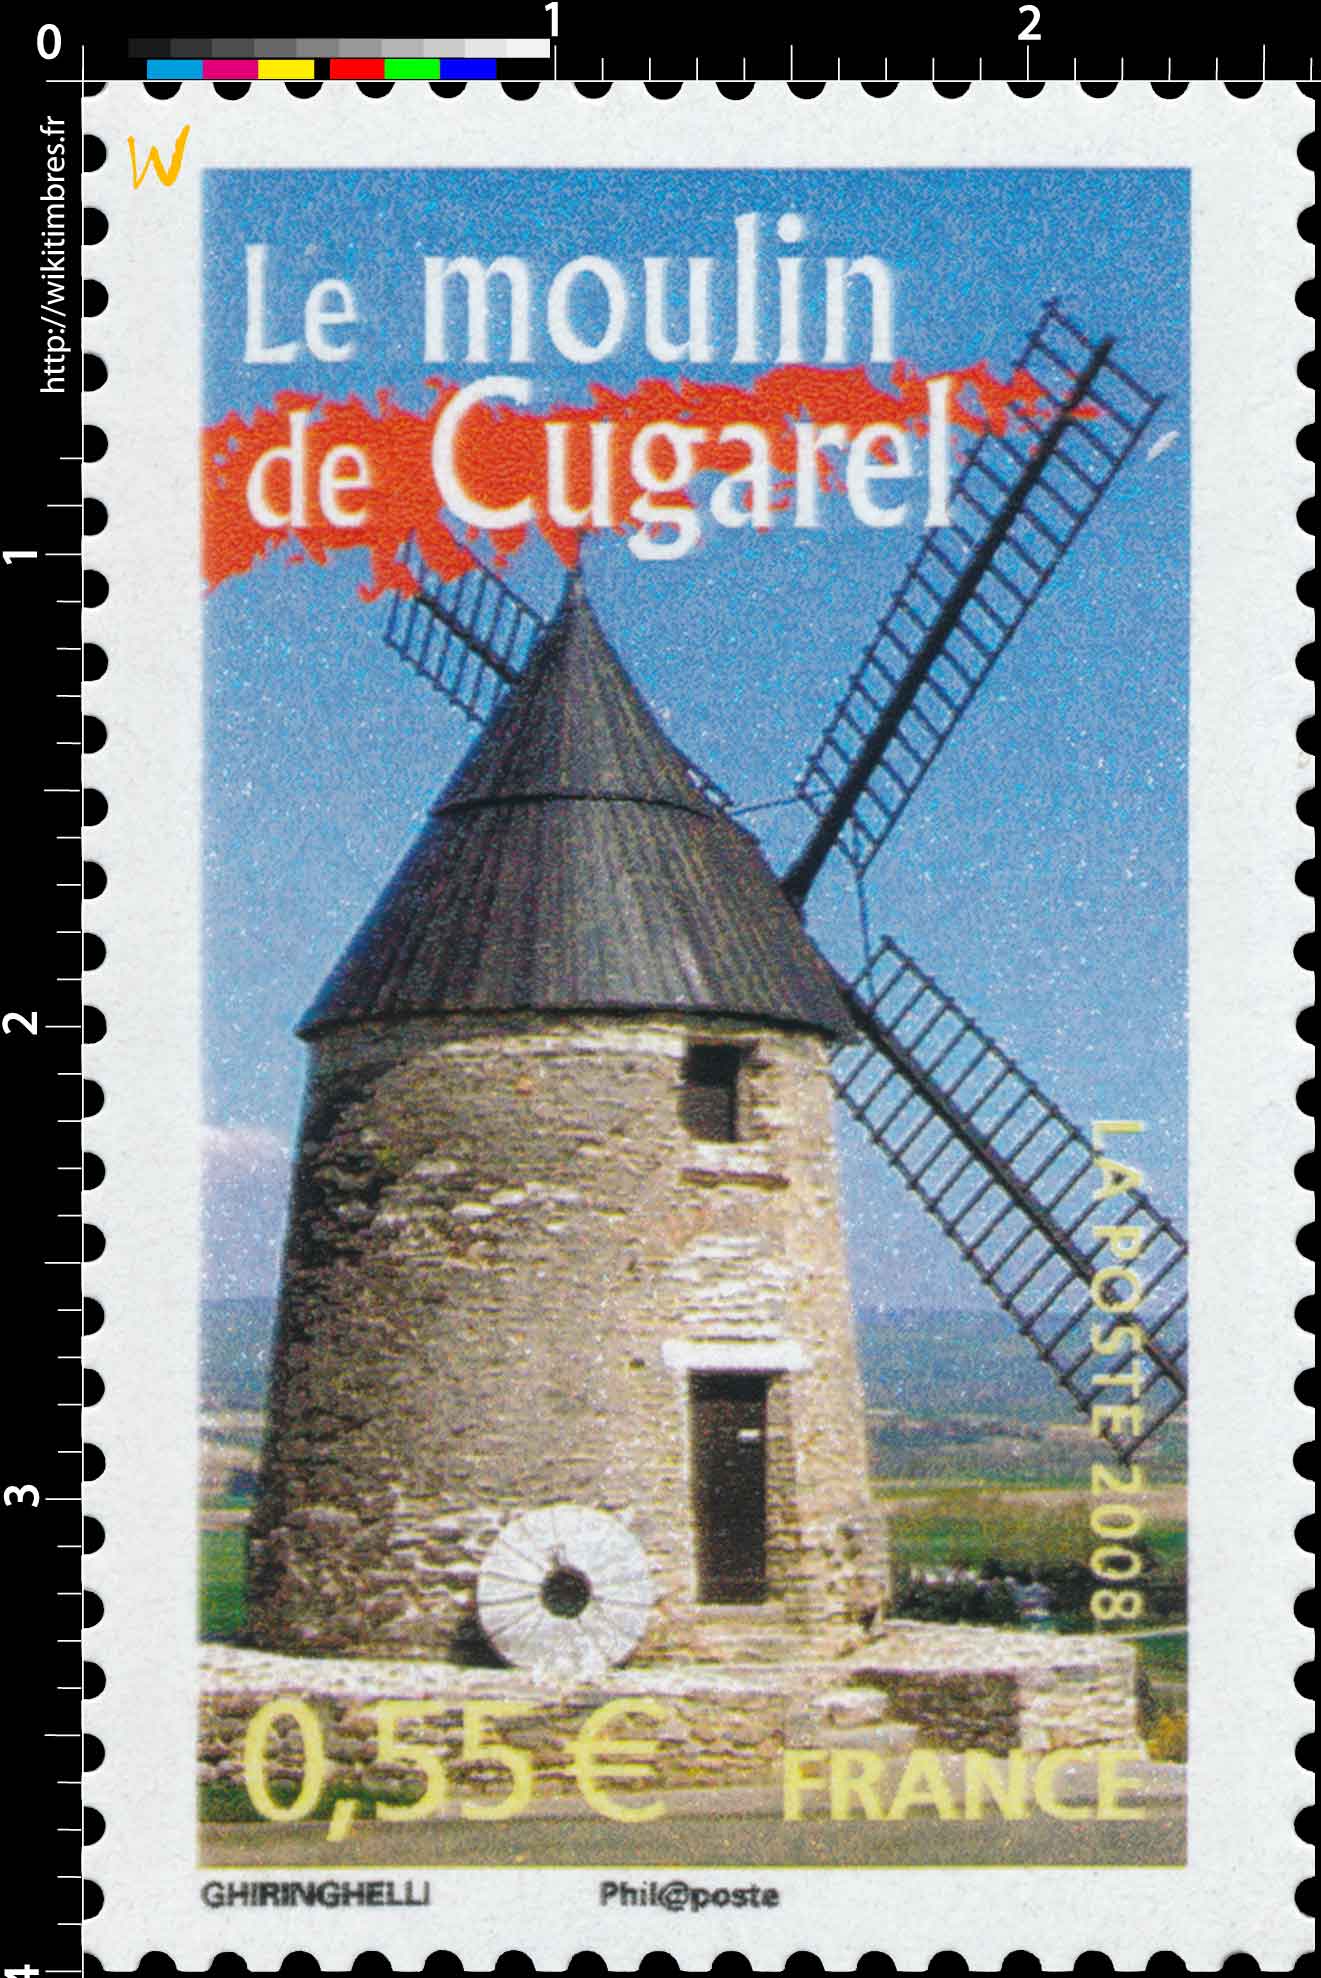 2008 Le moulin de Cugarel